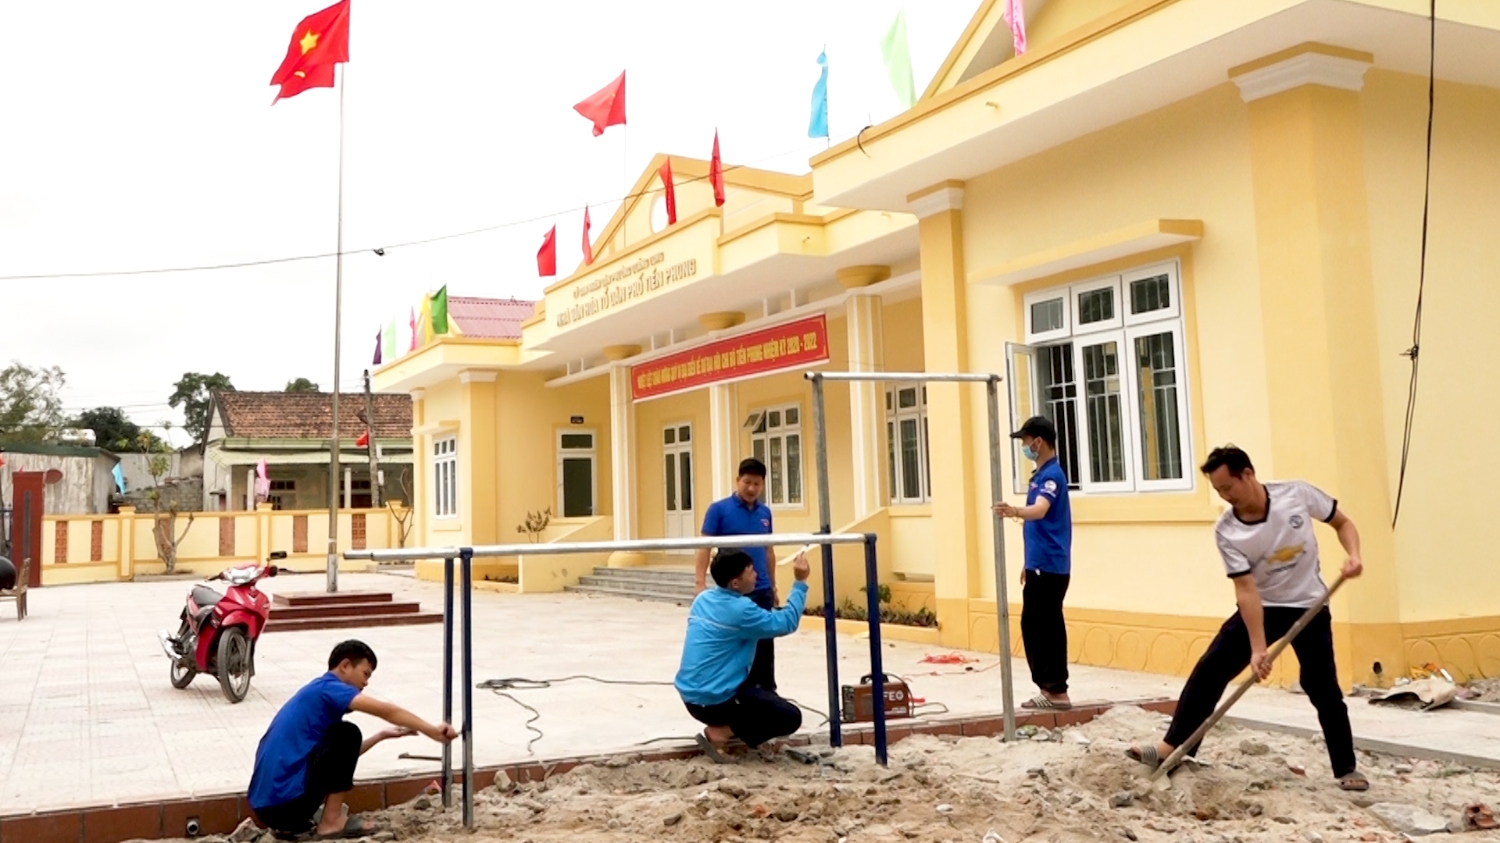 Đoàn phường Quảng Long làm công trình thanh niên tại nhà văn hóa TDP Tiền Phong